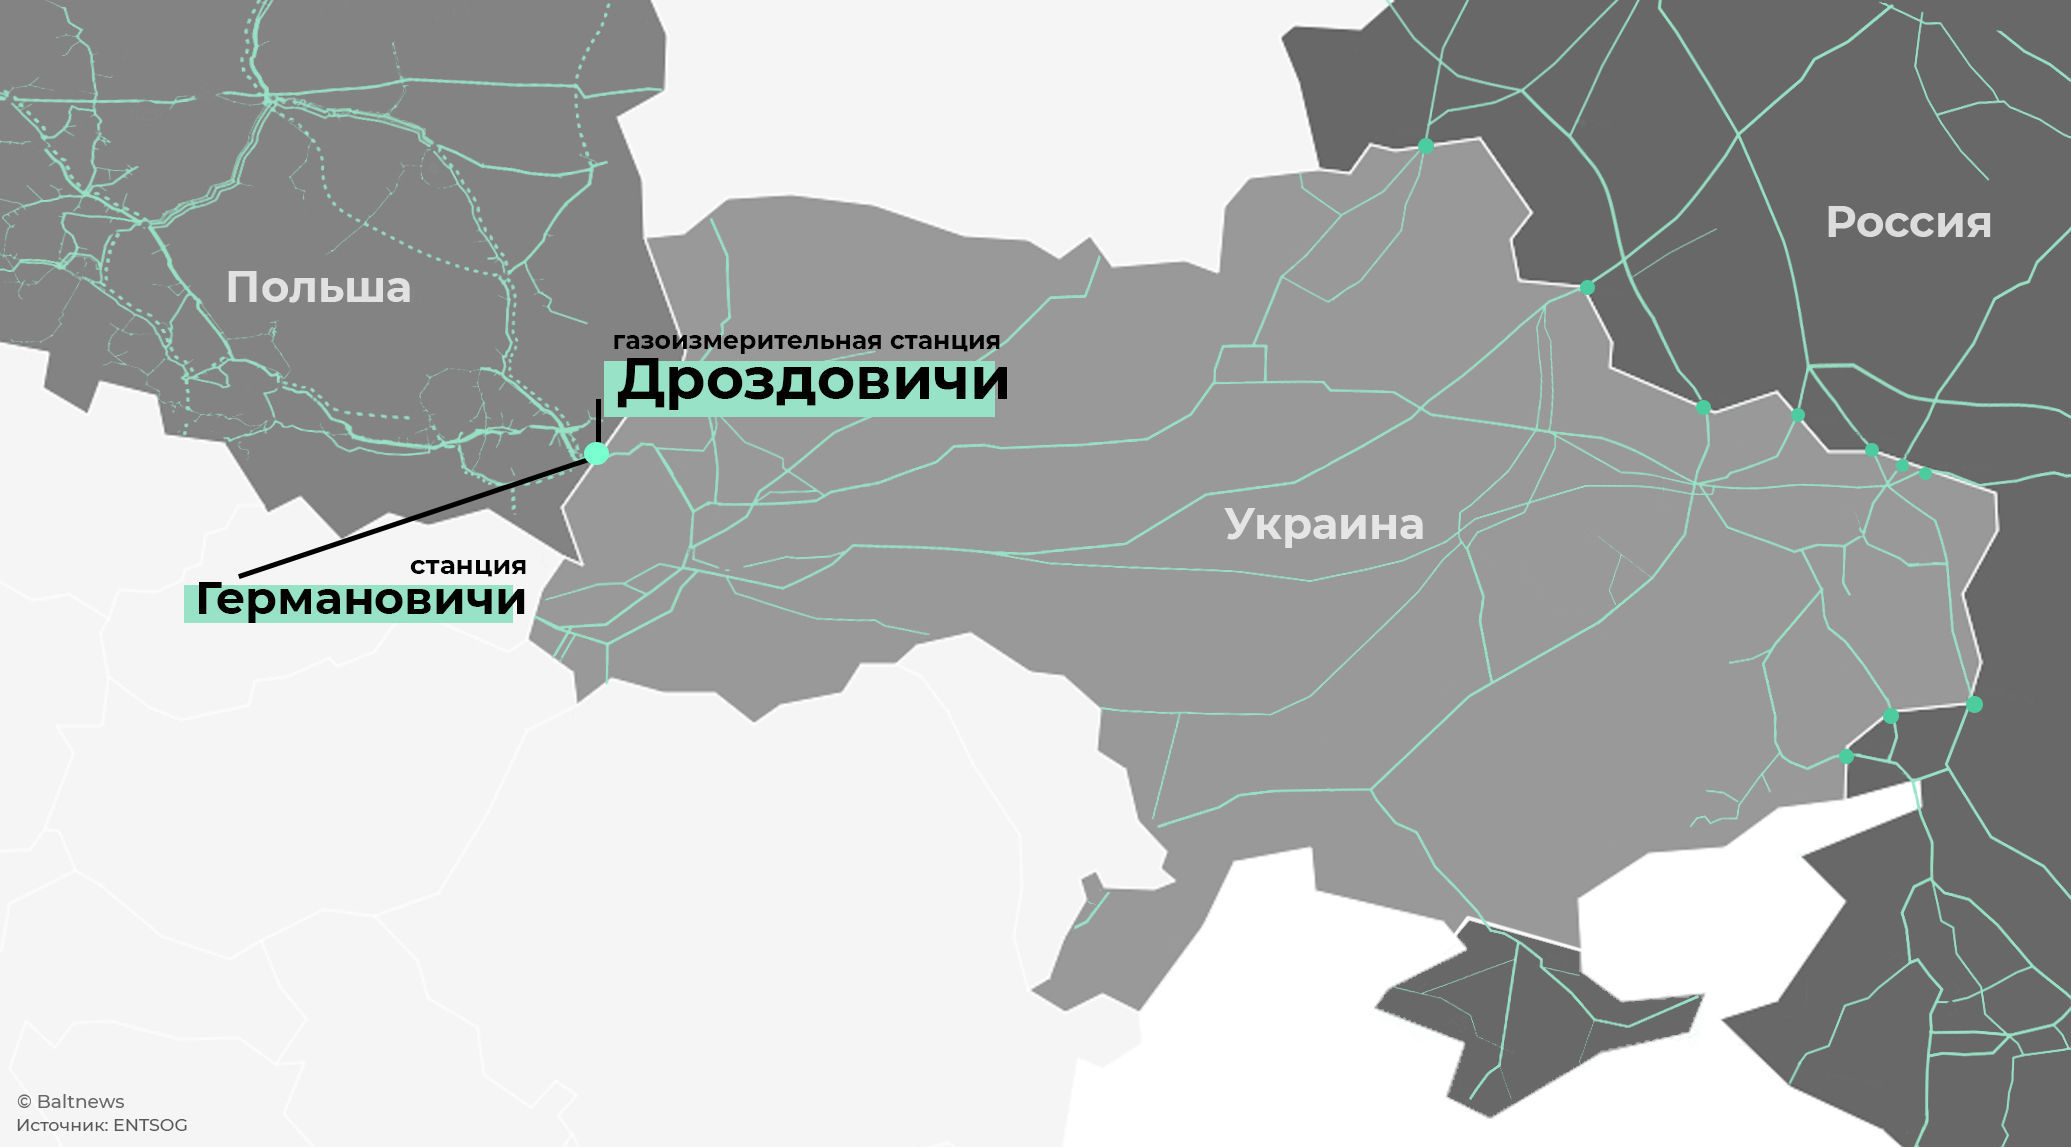 Транзит российского газа через ГТС Украины в Польшу